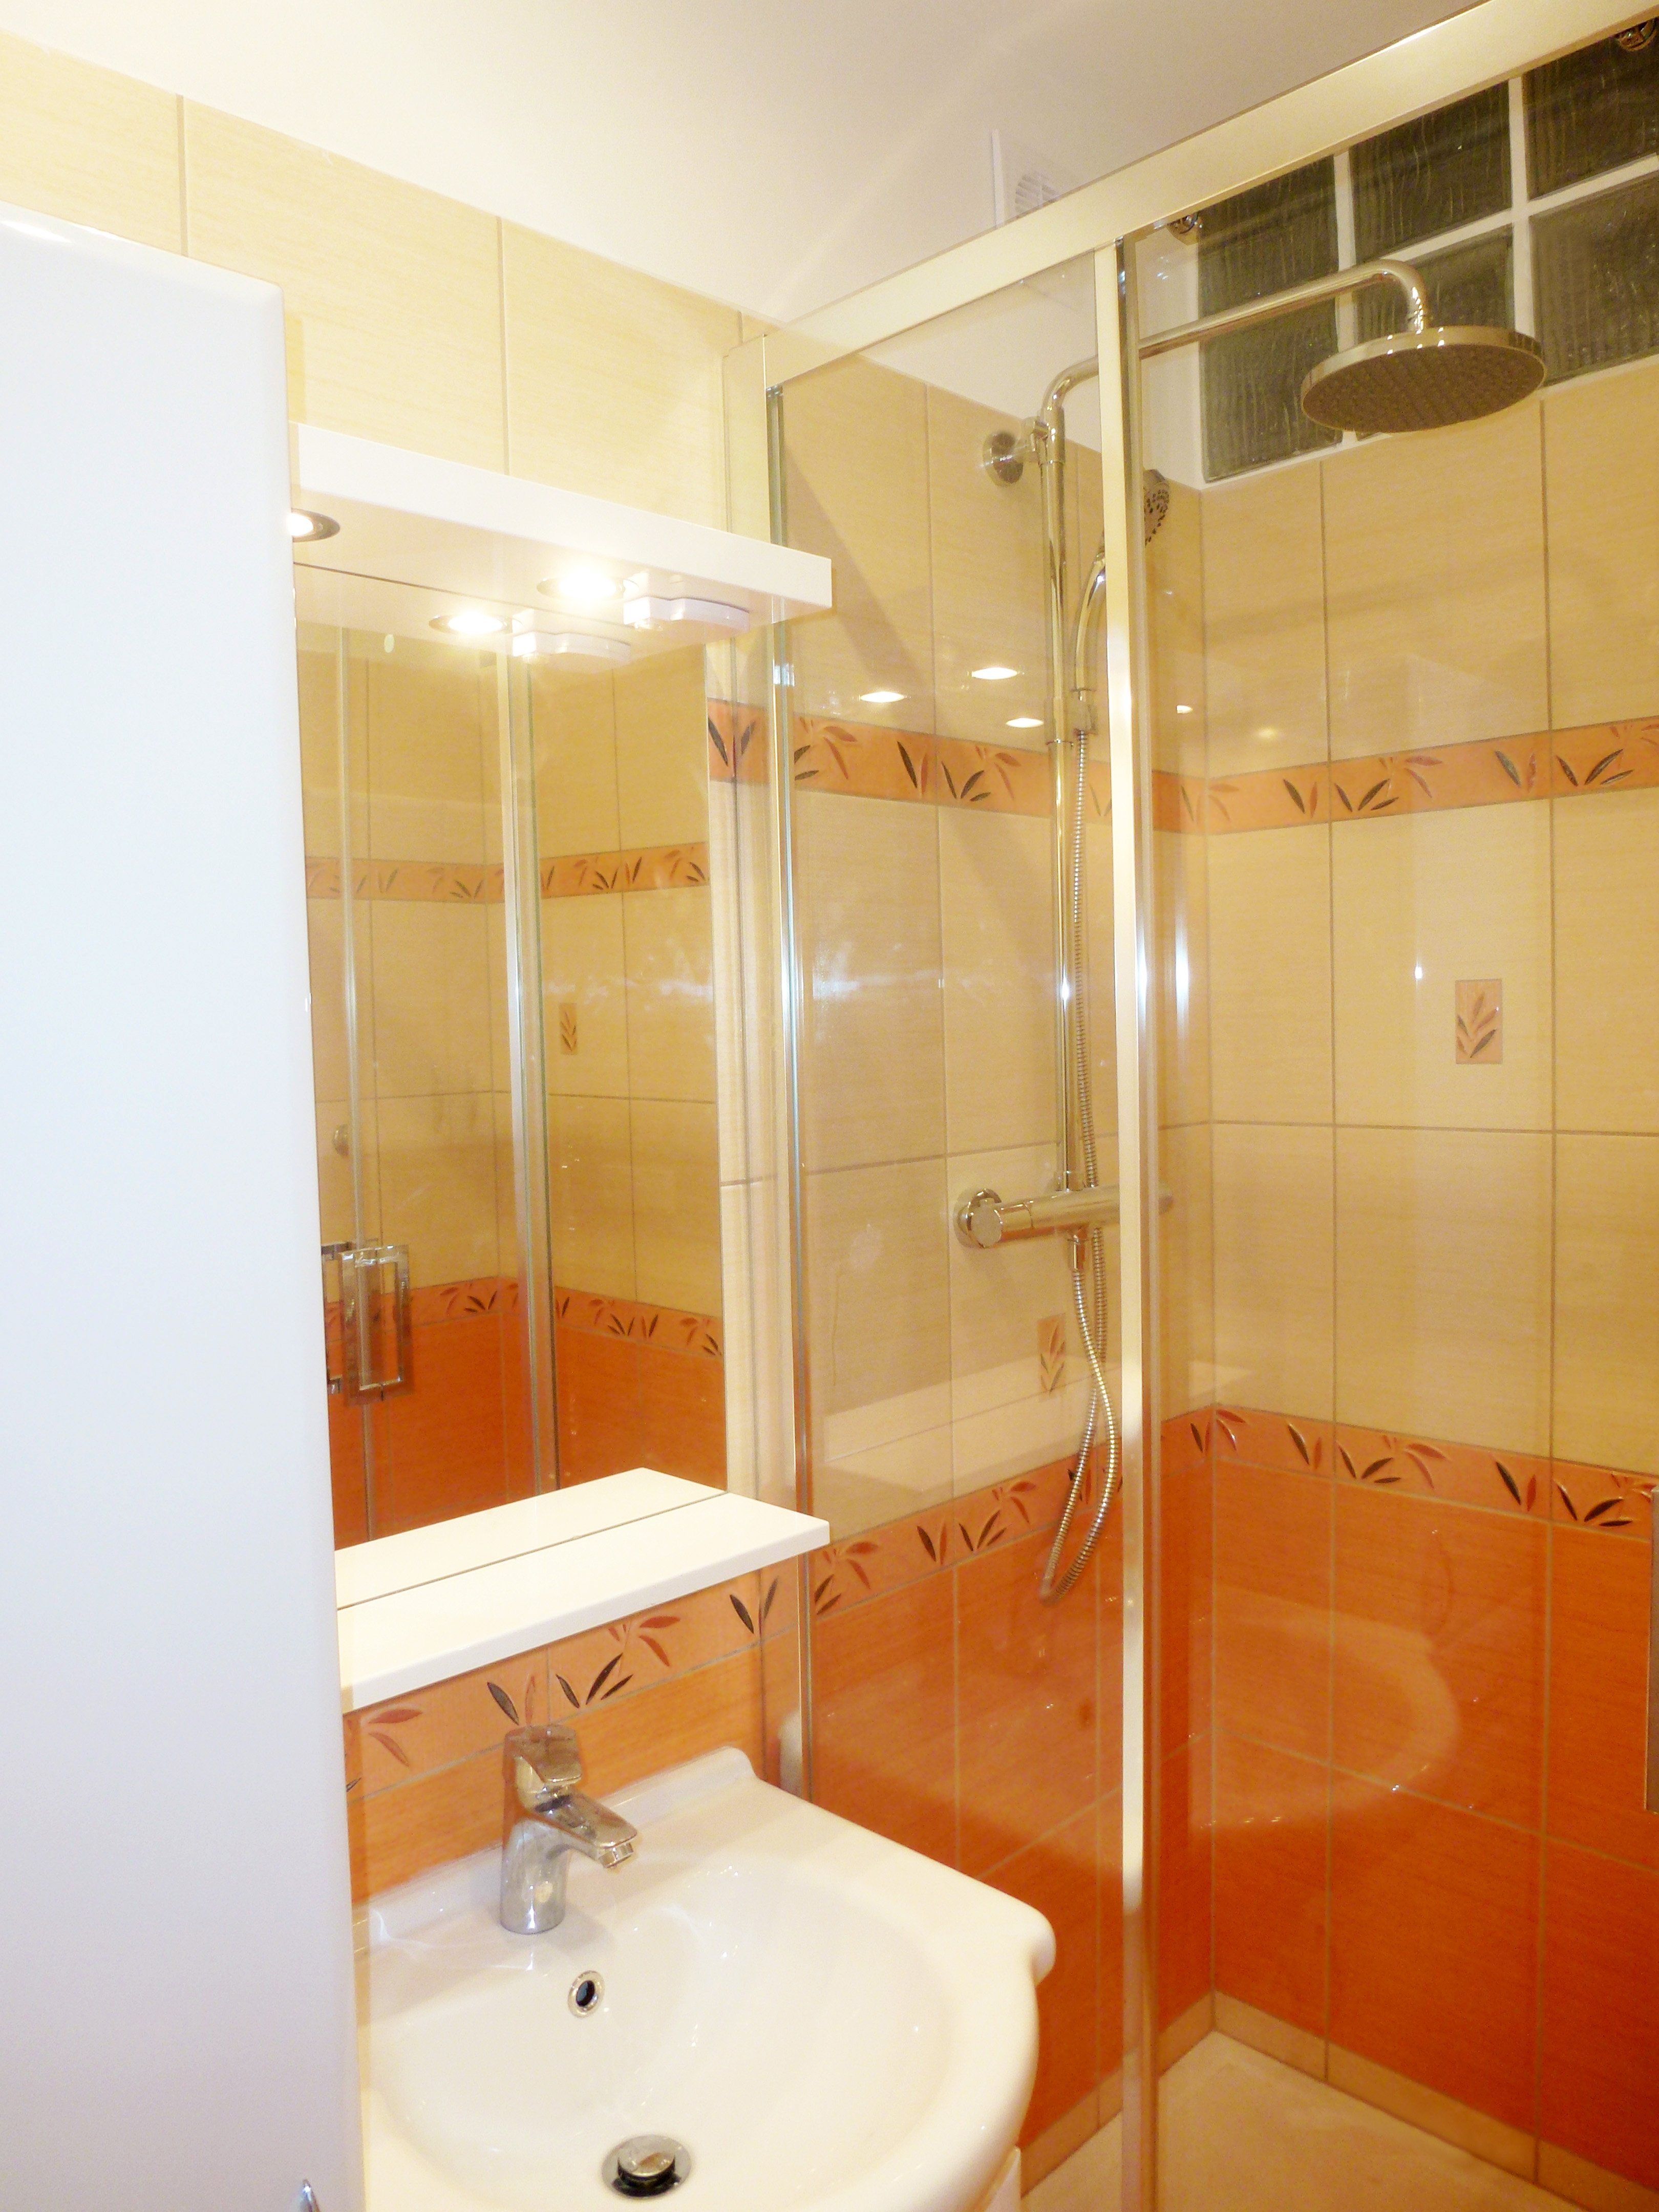 A19 Rekonstrukce malé koupelny (2,88 m2), Svitavy